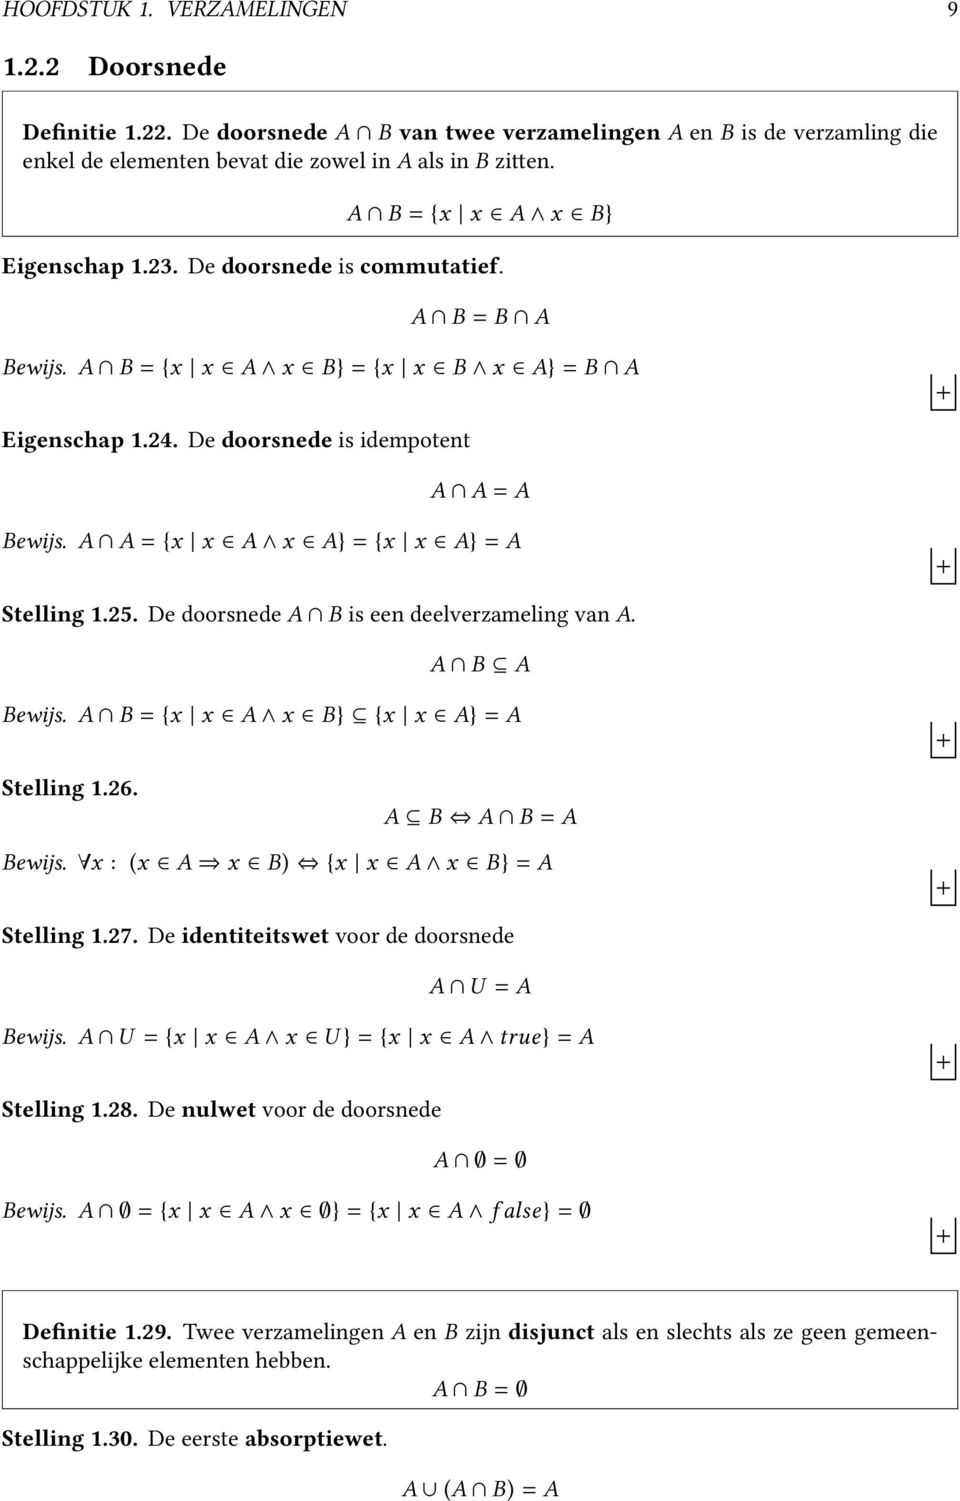 A A = {x x A x A} = {x x A} = A Stelling 1.25. De doorsnede A B is een deelverzameling van A. A B A Bewijs. A B = {x x A x B} {x x A} = A Stelling 1.26. A B A B = A Bewijs.